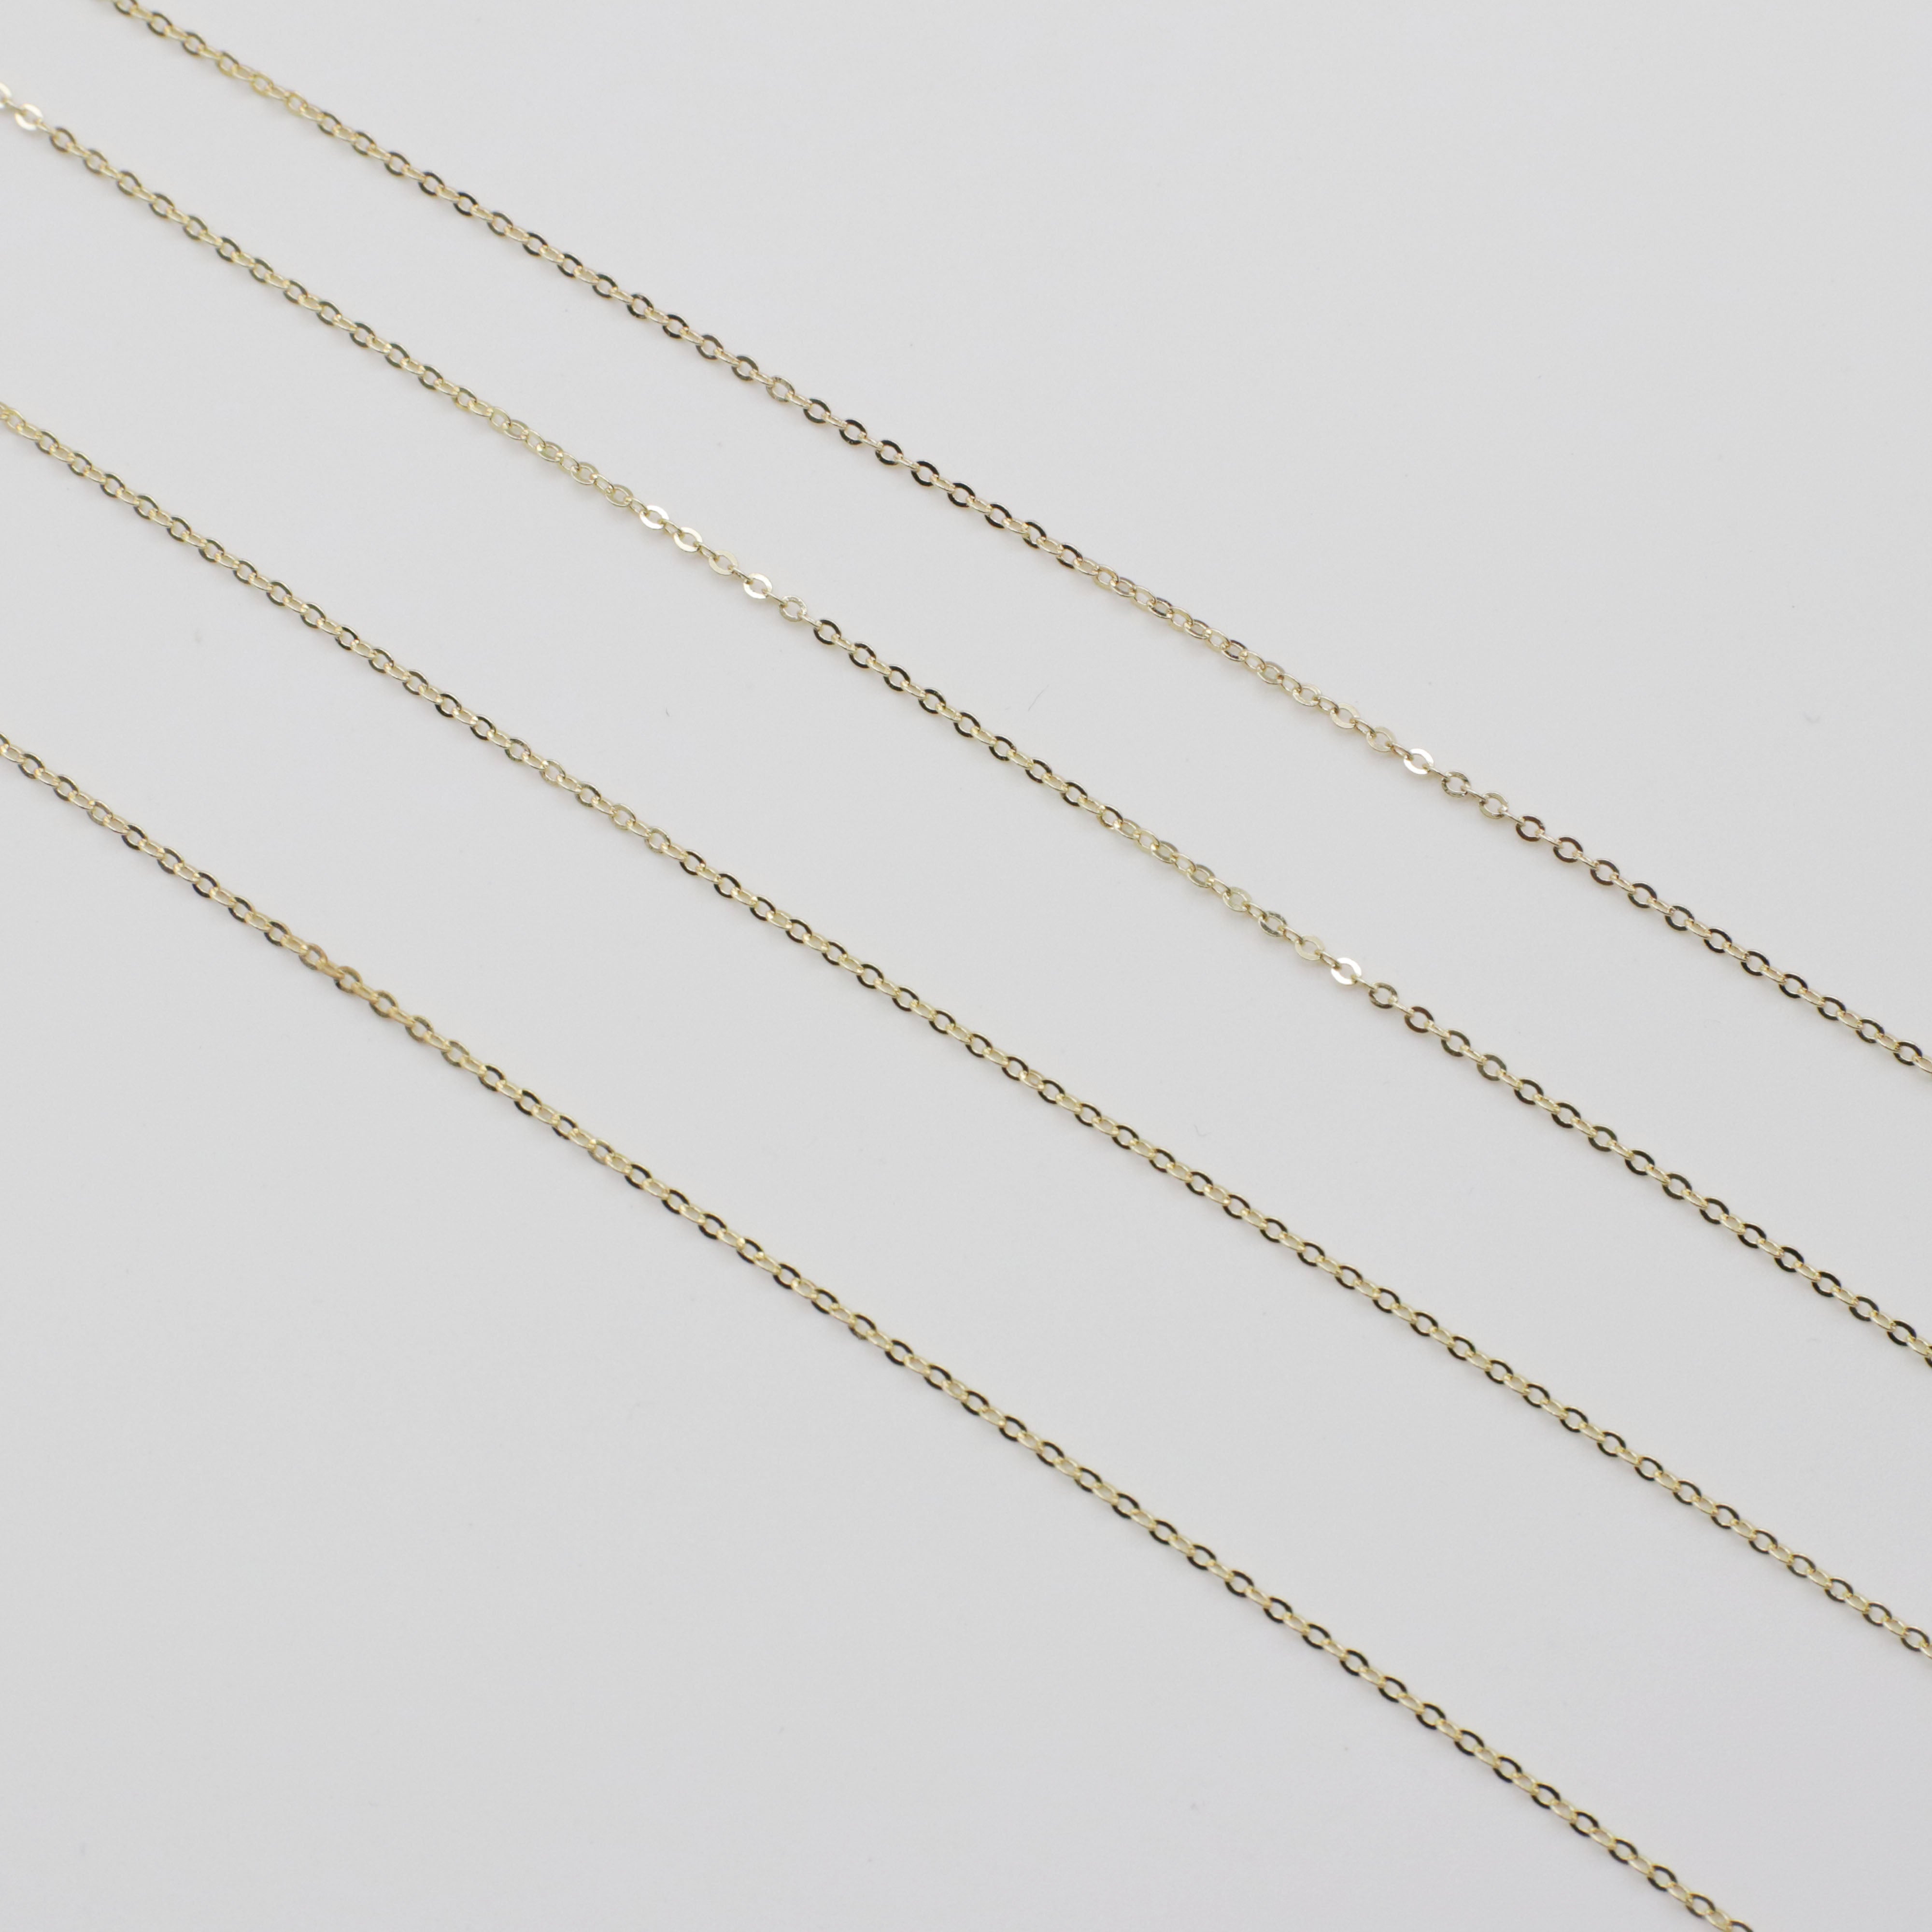 Corrente oval de latão clássica de 1,7 x 2,2 mm planejada com fio de 0,3 mm de espessura banhado a ouro para design de joias